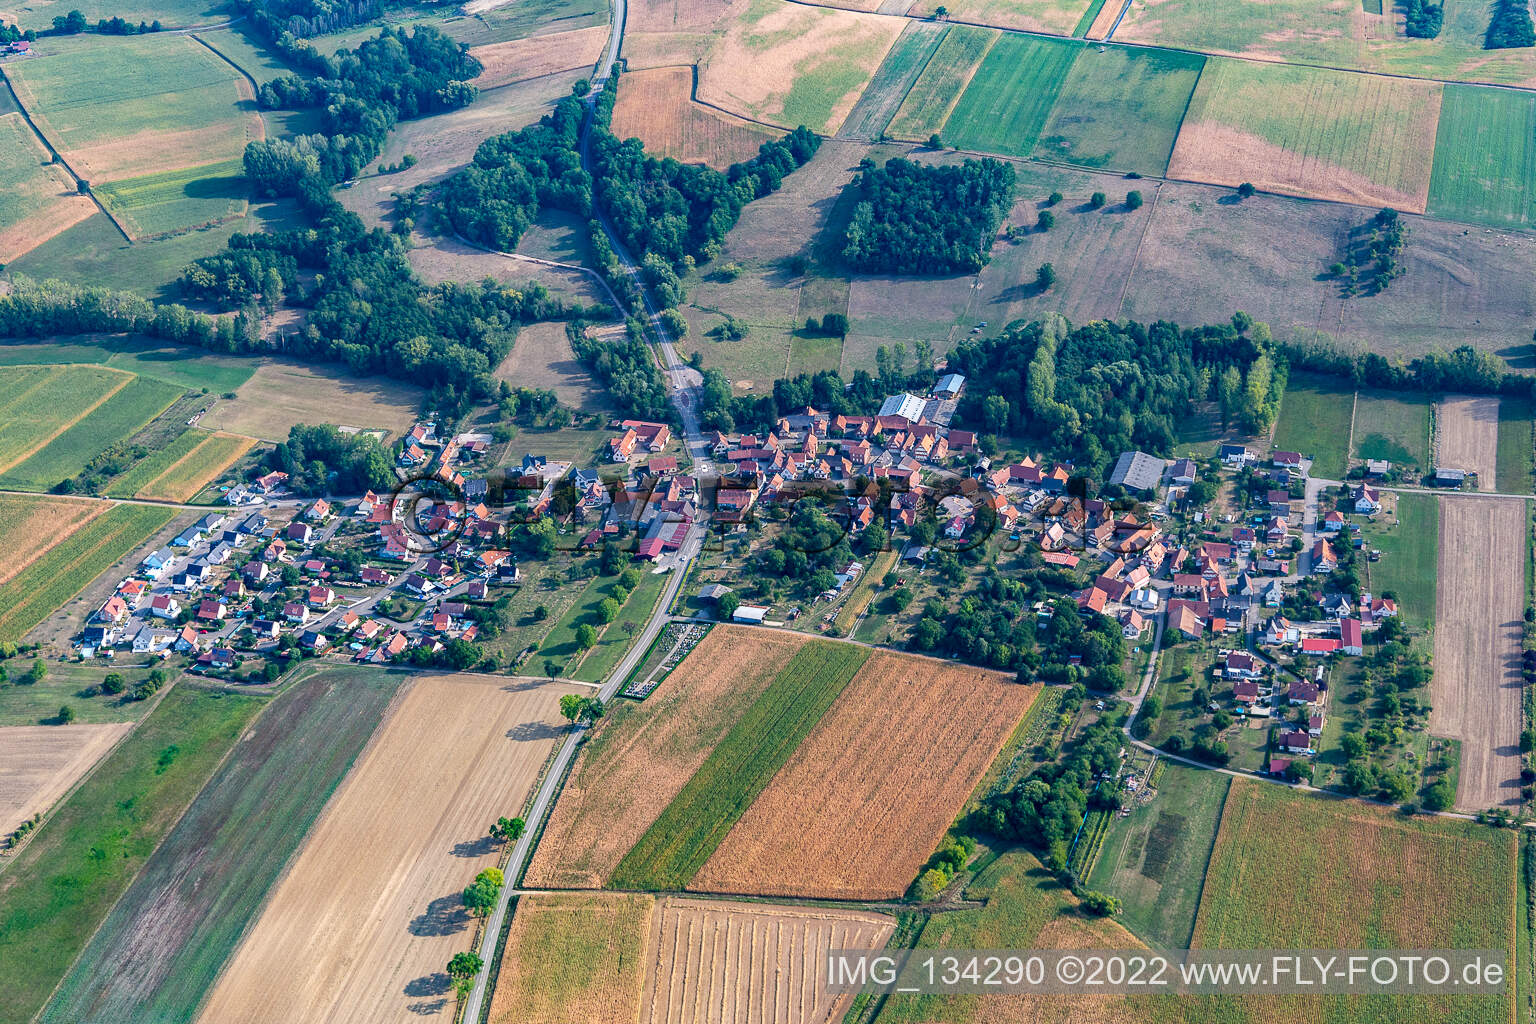 Ingolsheim im Bundesland Bas-Rhin, Frankreich von oben gesehen